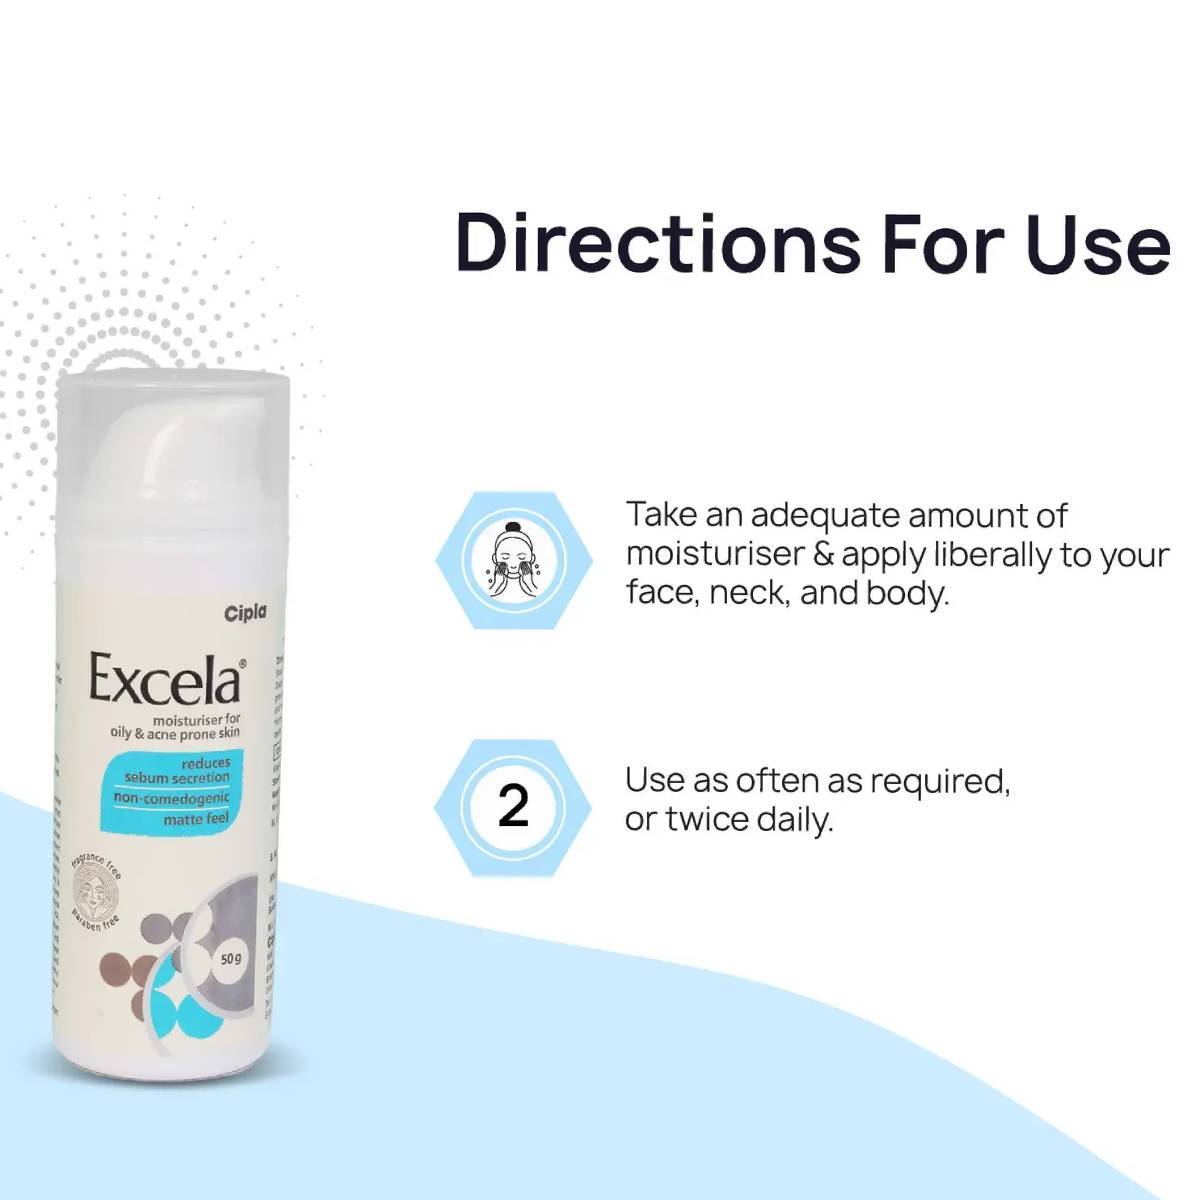 Excela Moisturiser for Oily & Acne Prone Skin